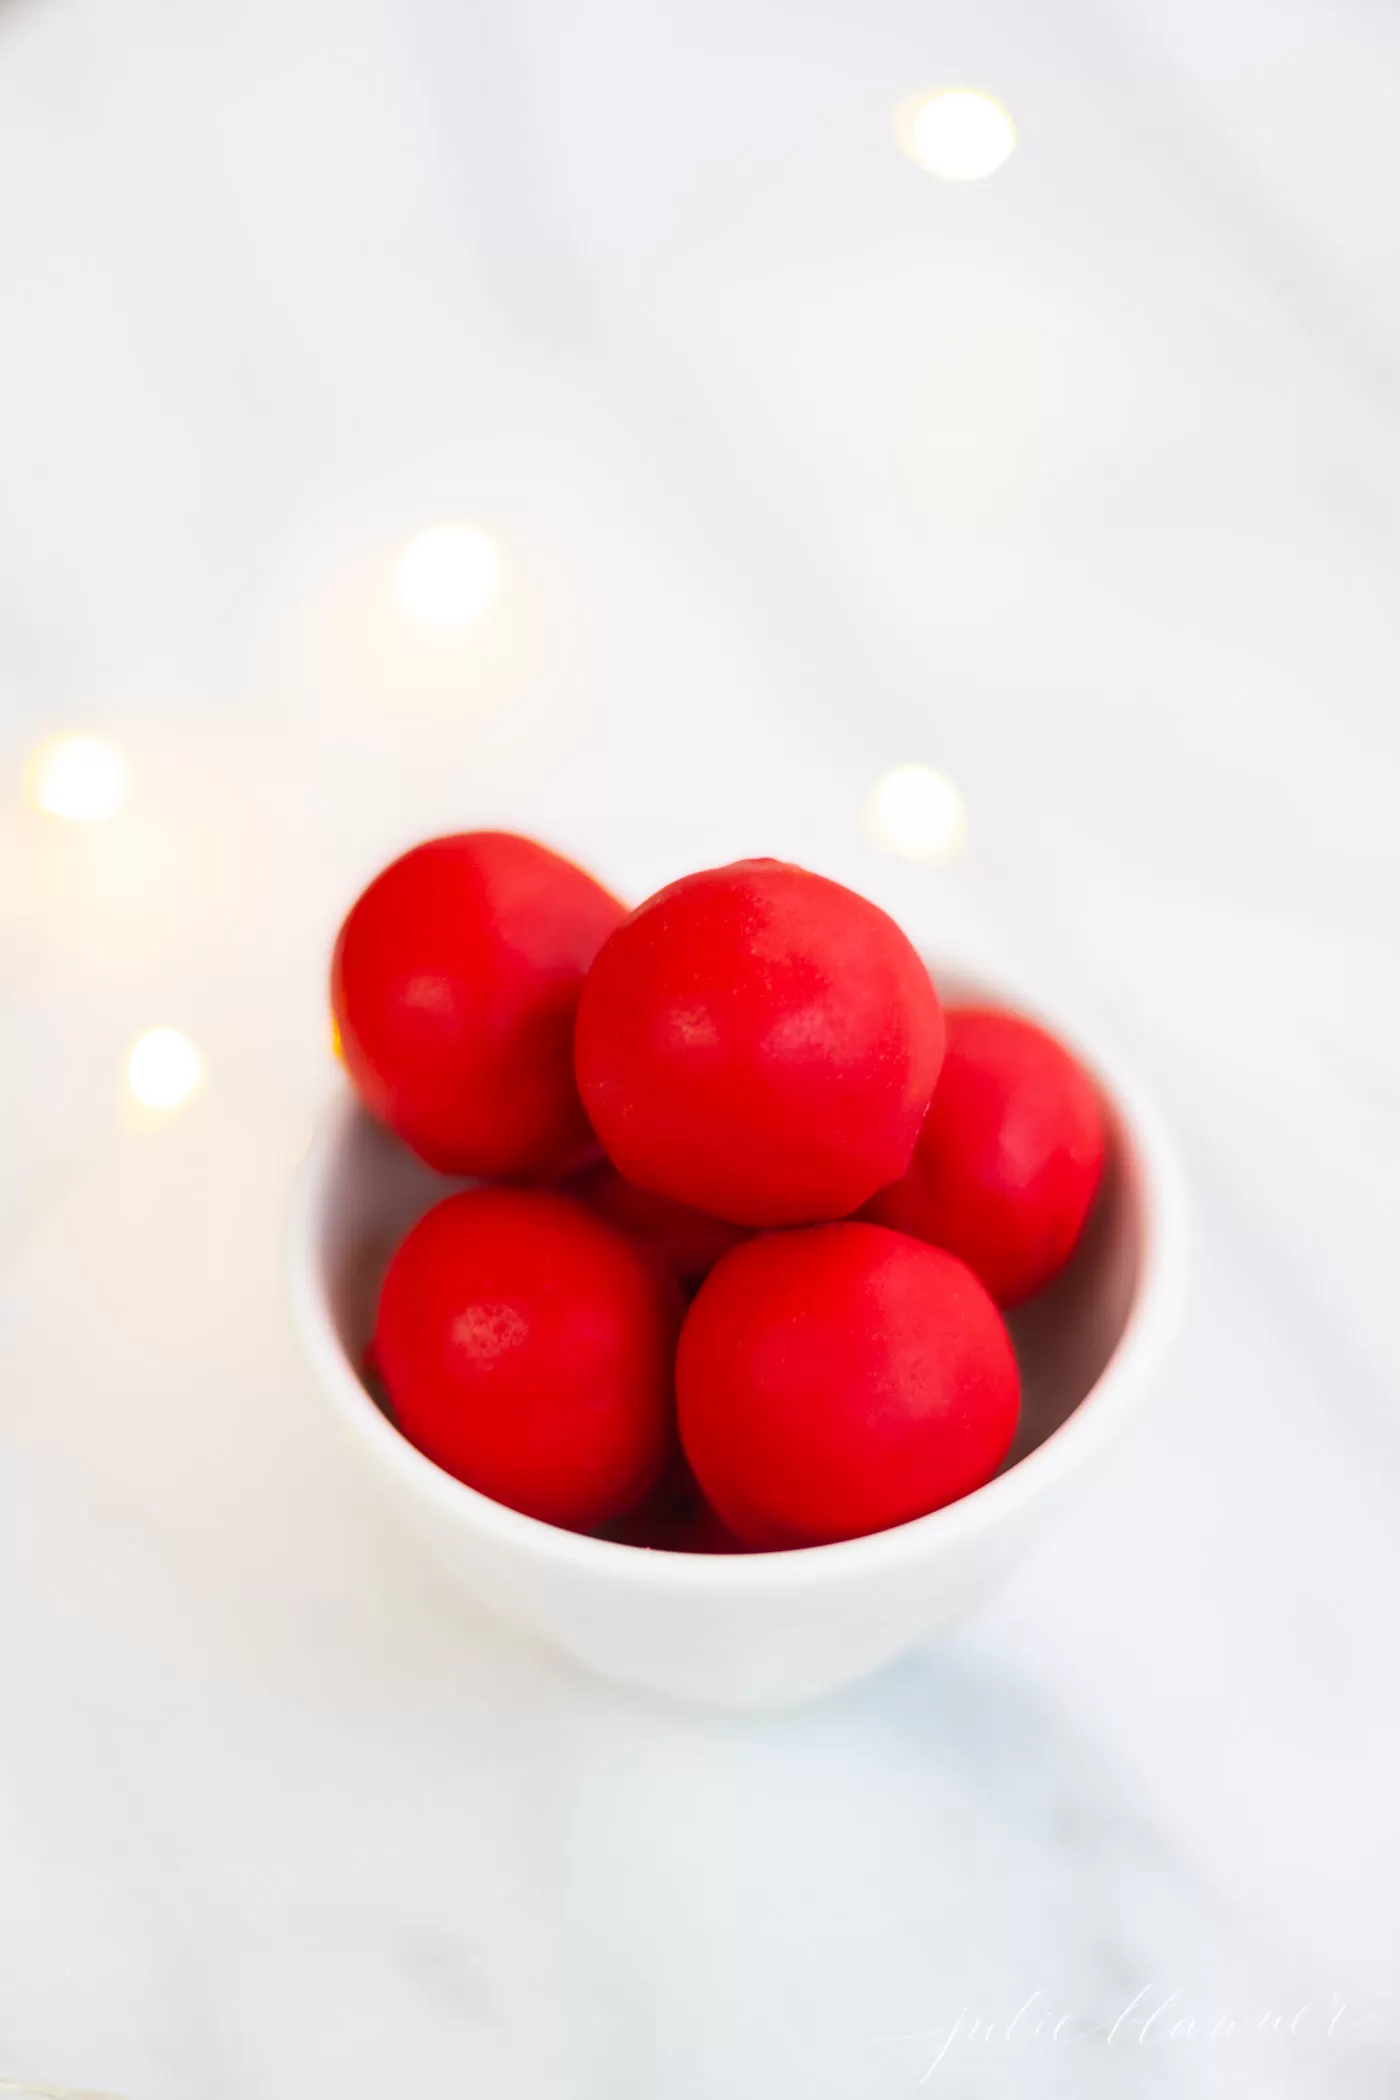 Rudolph nose dough balls in a bowl